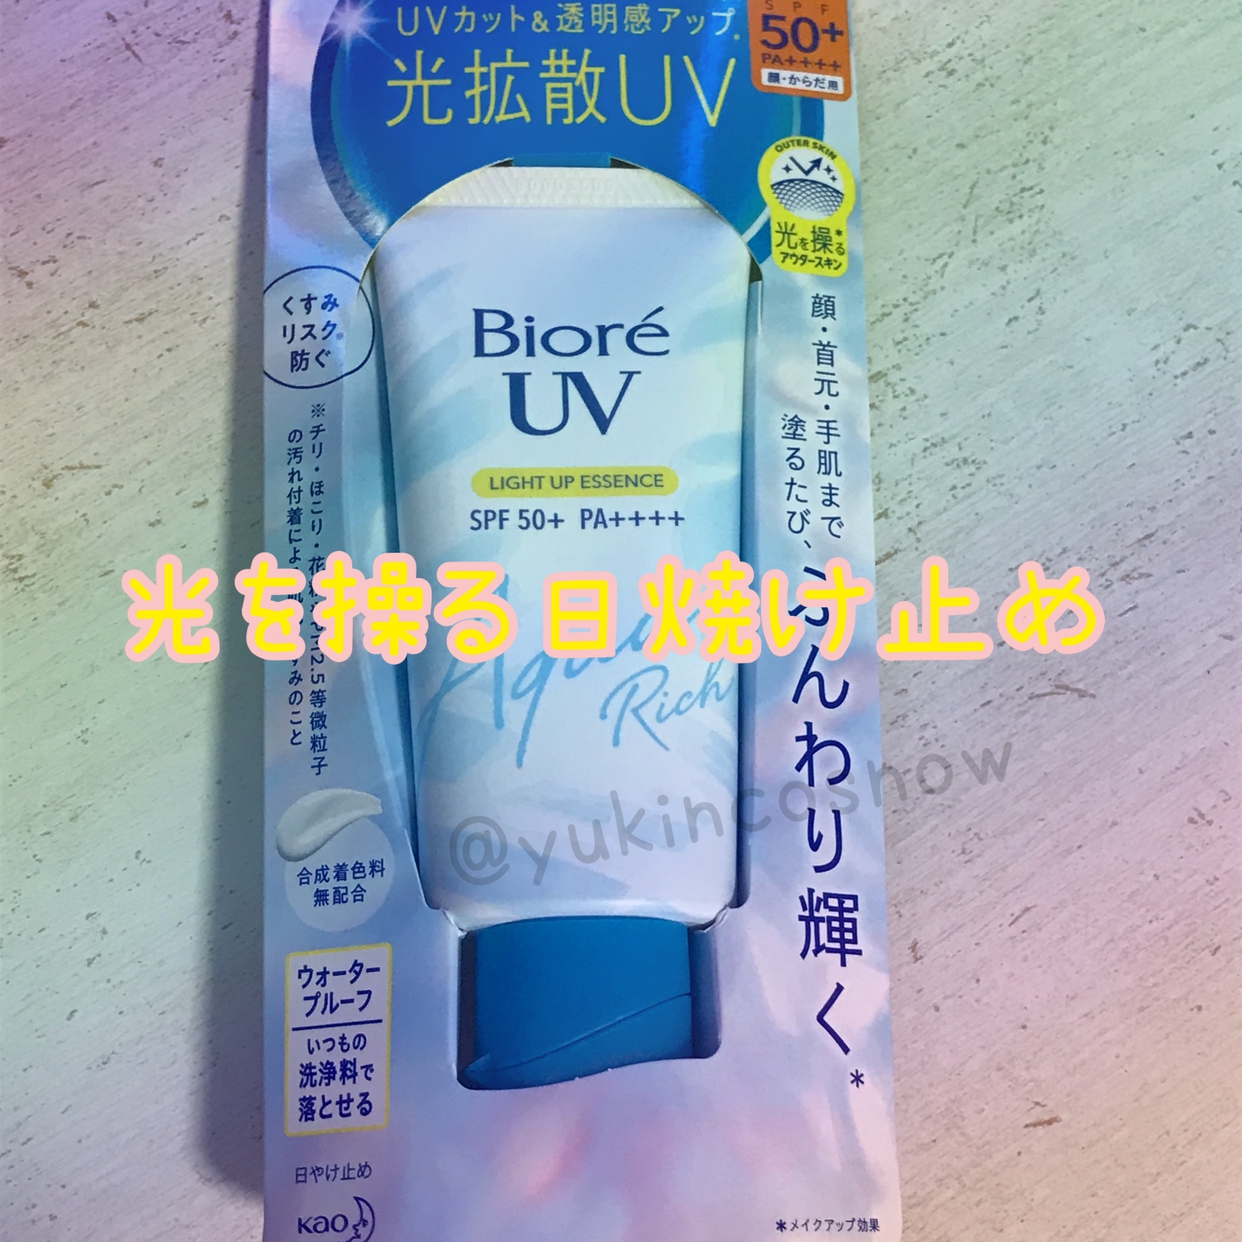 Bioré(ビオレ) UV アクアリッチ ライトアップエッセンスの良い点・メリットに関するゆきさんの口コミ画像1